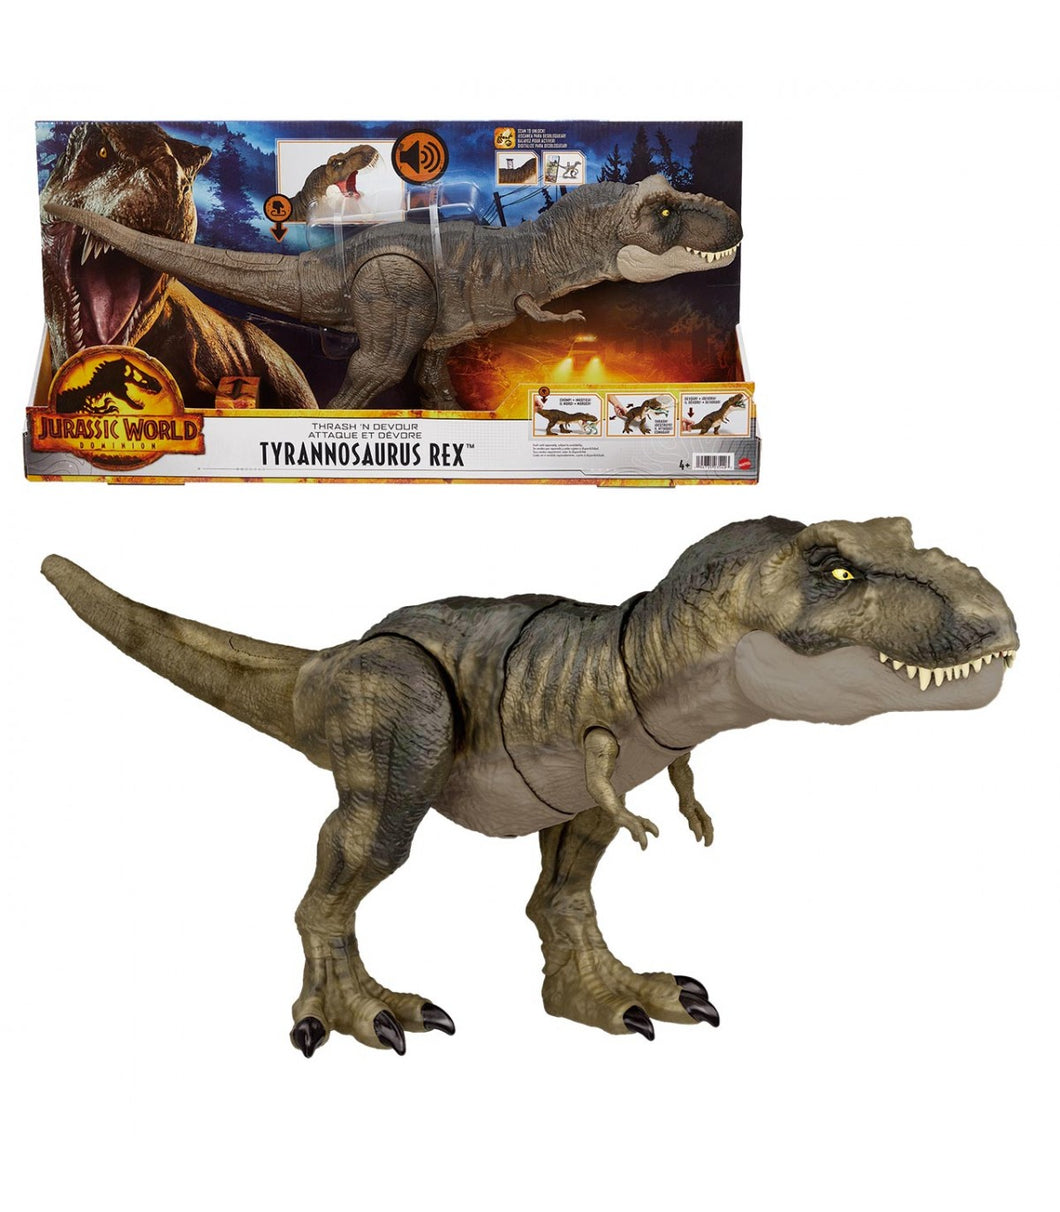 Jurassic World Trex Golpea y Devora vuelve más furioso que nunca!. Este fantástico Tiranosaurio Rex es totalmente articulado. ¡Podrás simular tus películas favoritas